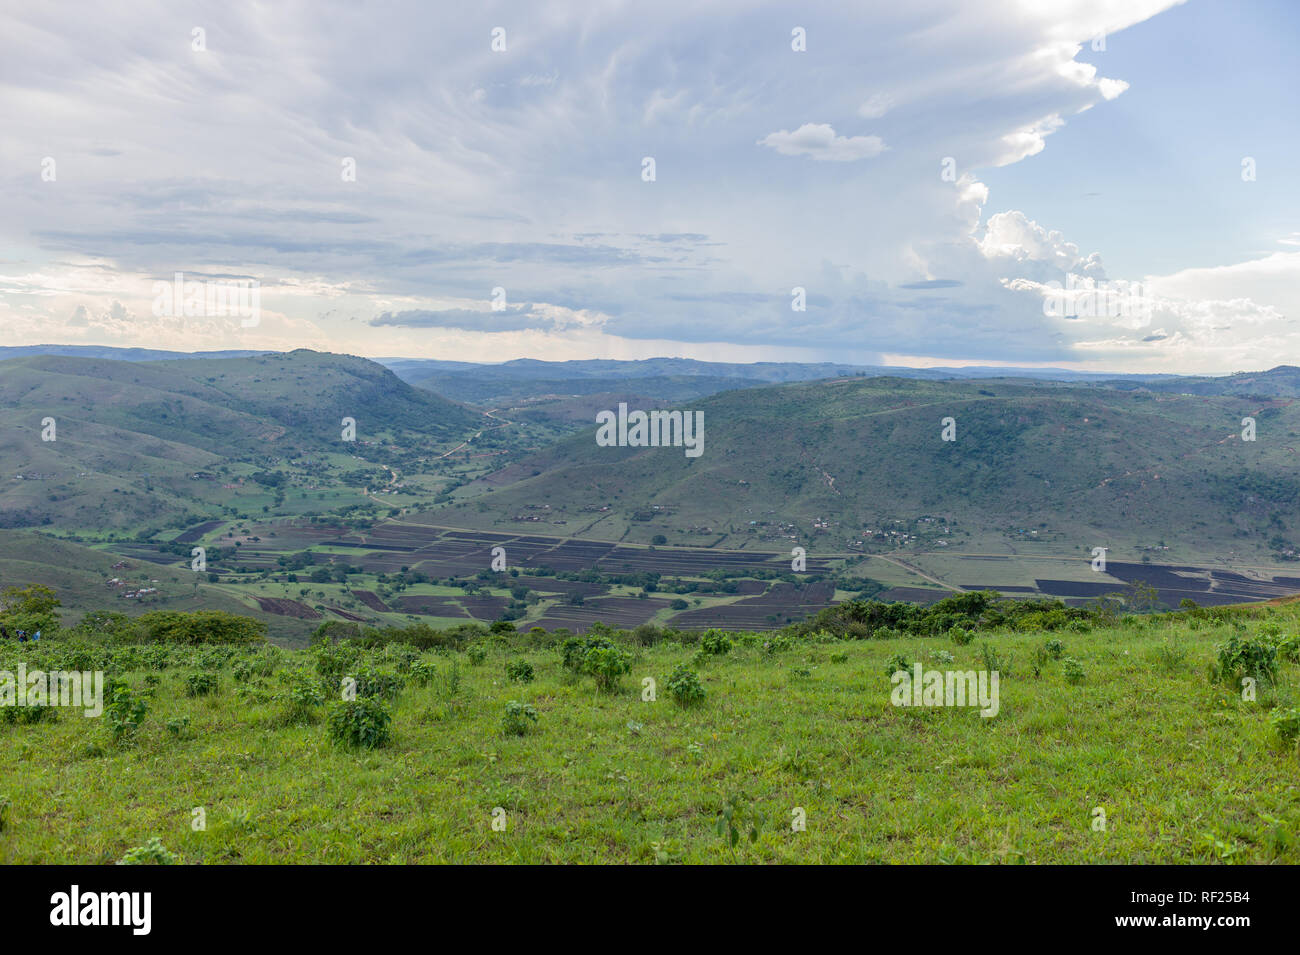 Nelle zone rurali del KwaZulu-Natal, Sud Africa, dispongono di piccola scala di pascoli e di agricoltura su dolci colline erbose. Foto Stock